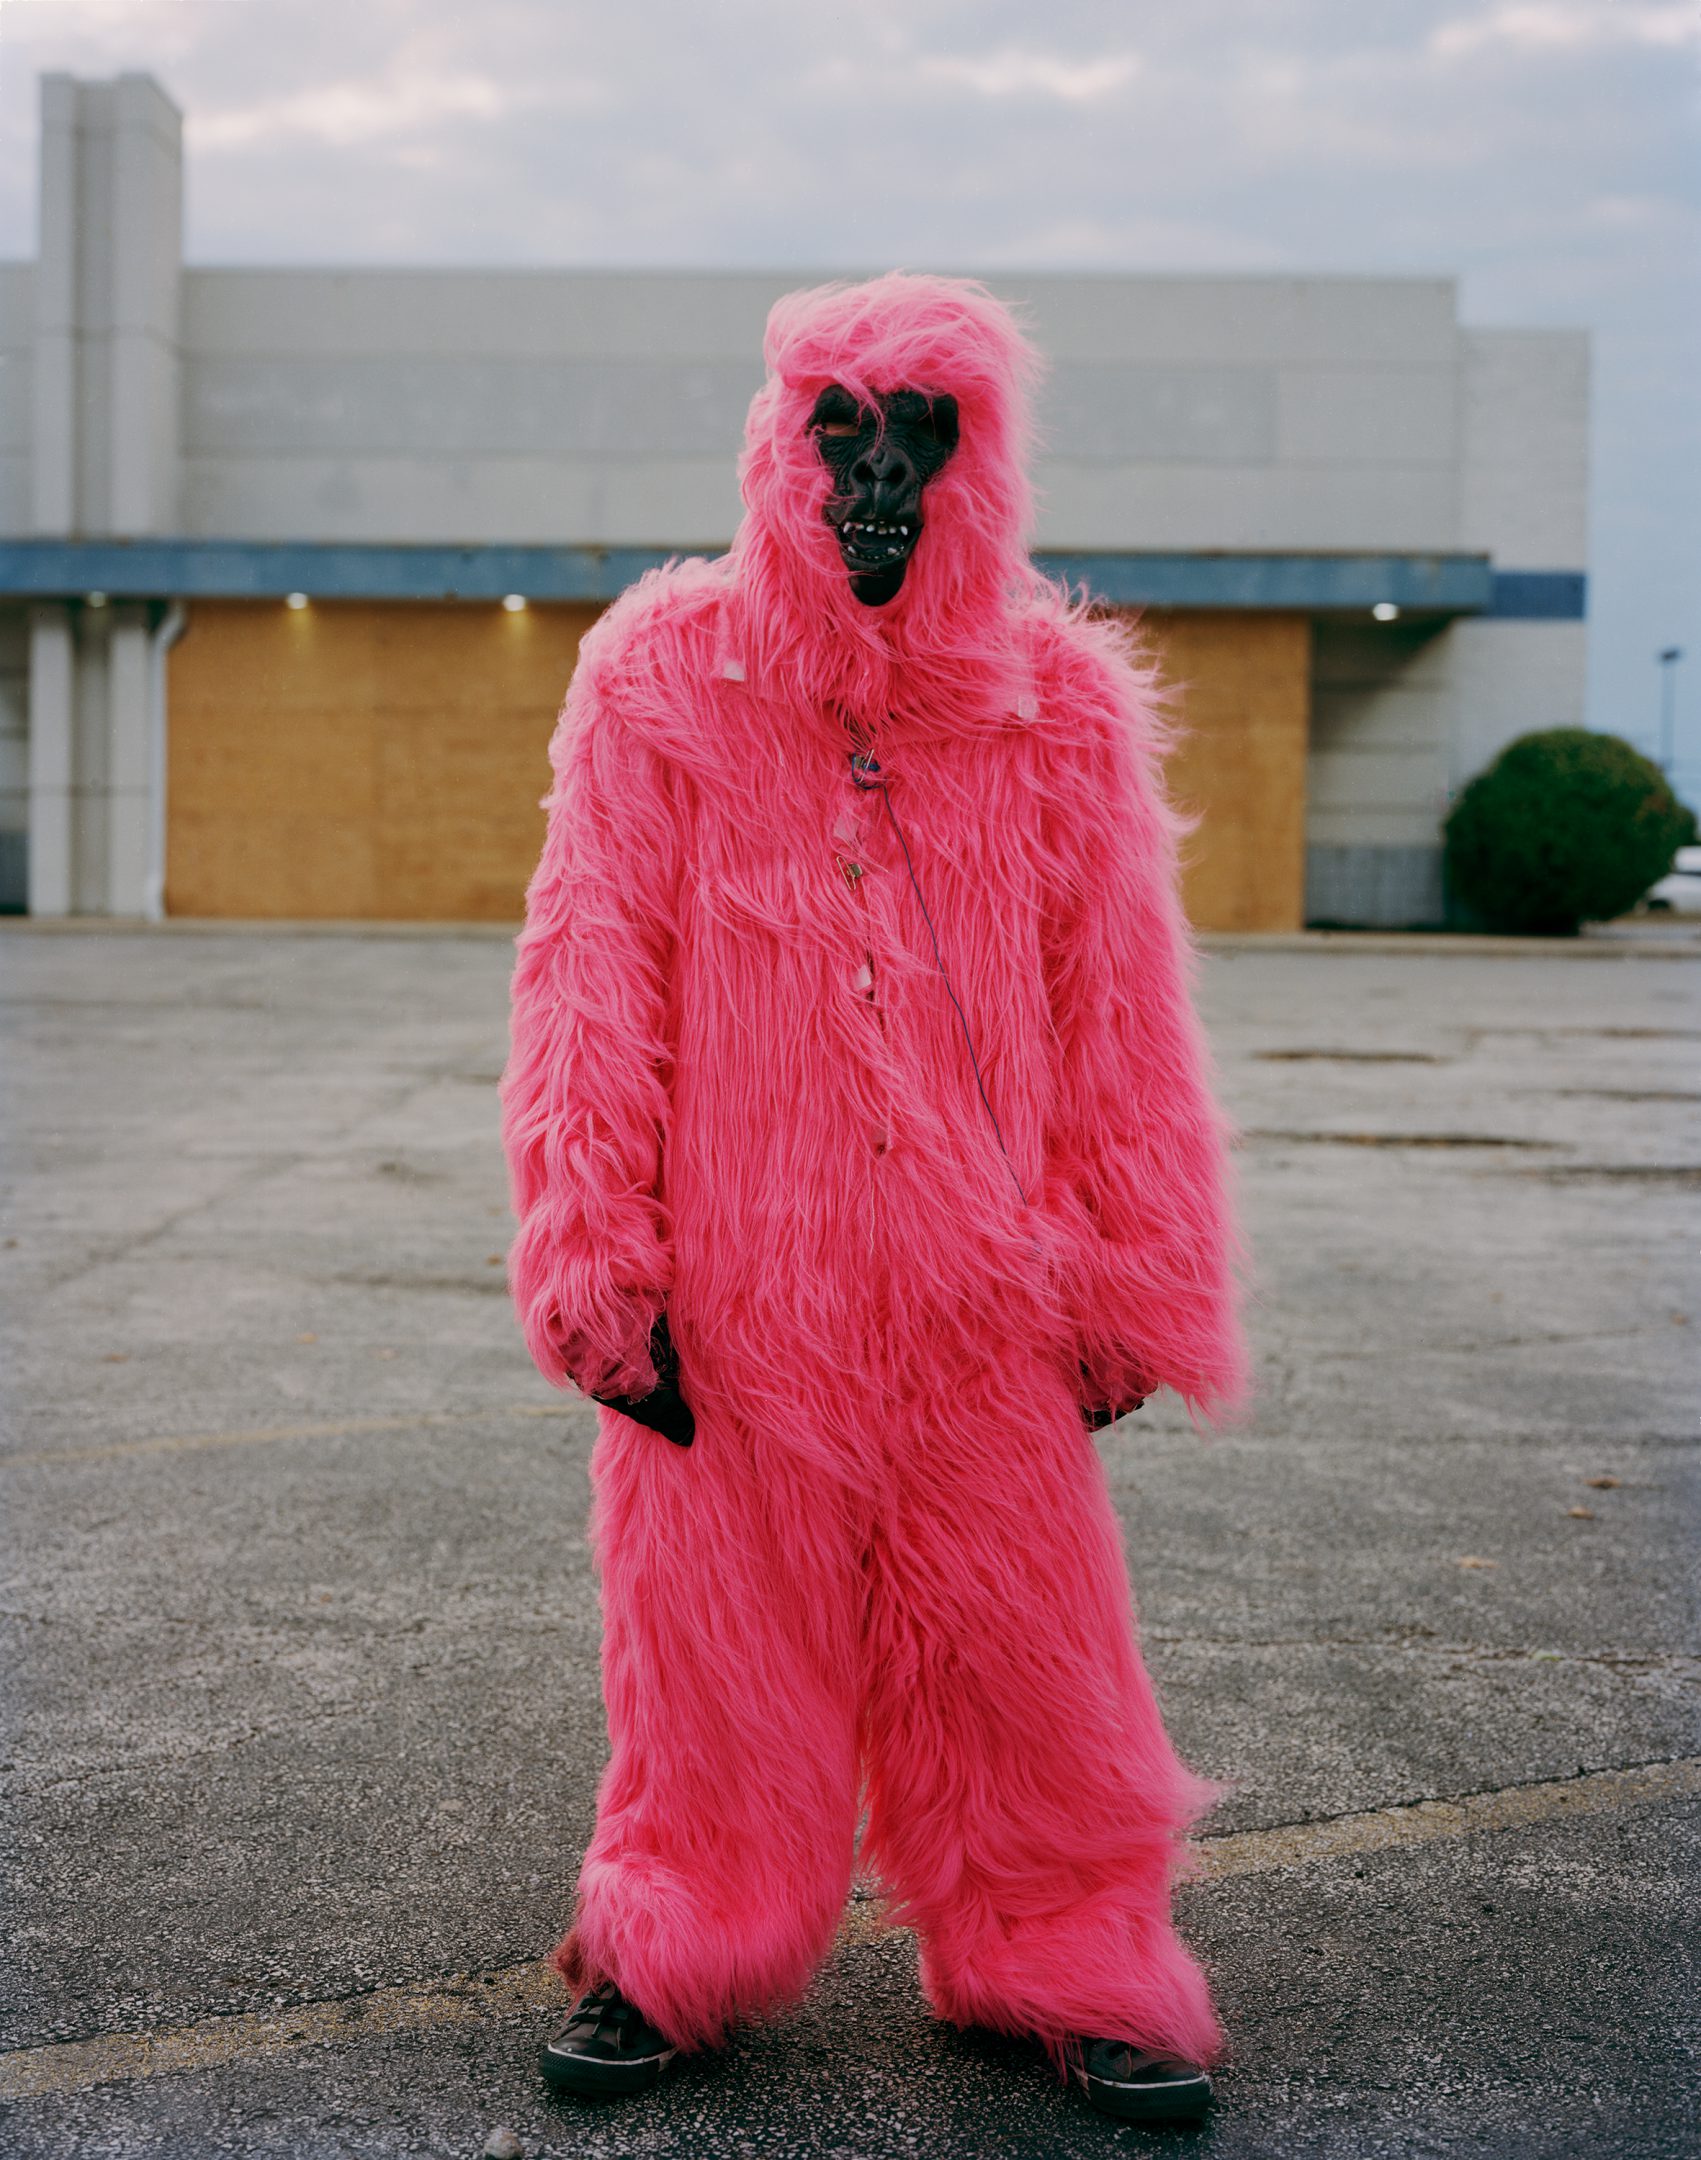 Paul D'Amato - Jose in Gorilla Suit, 2018